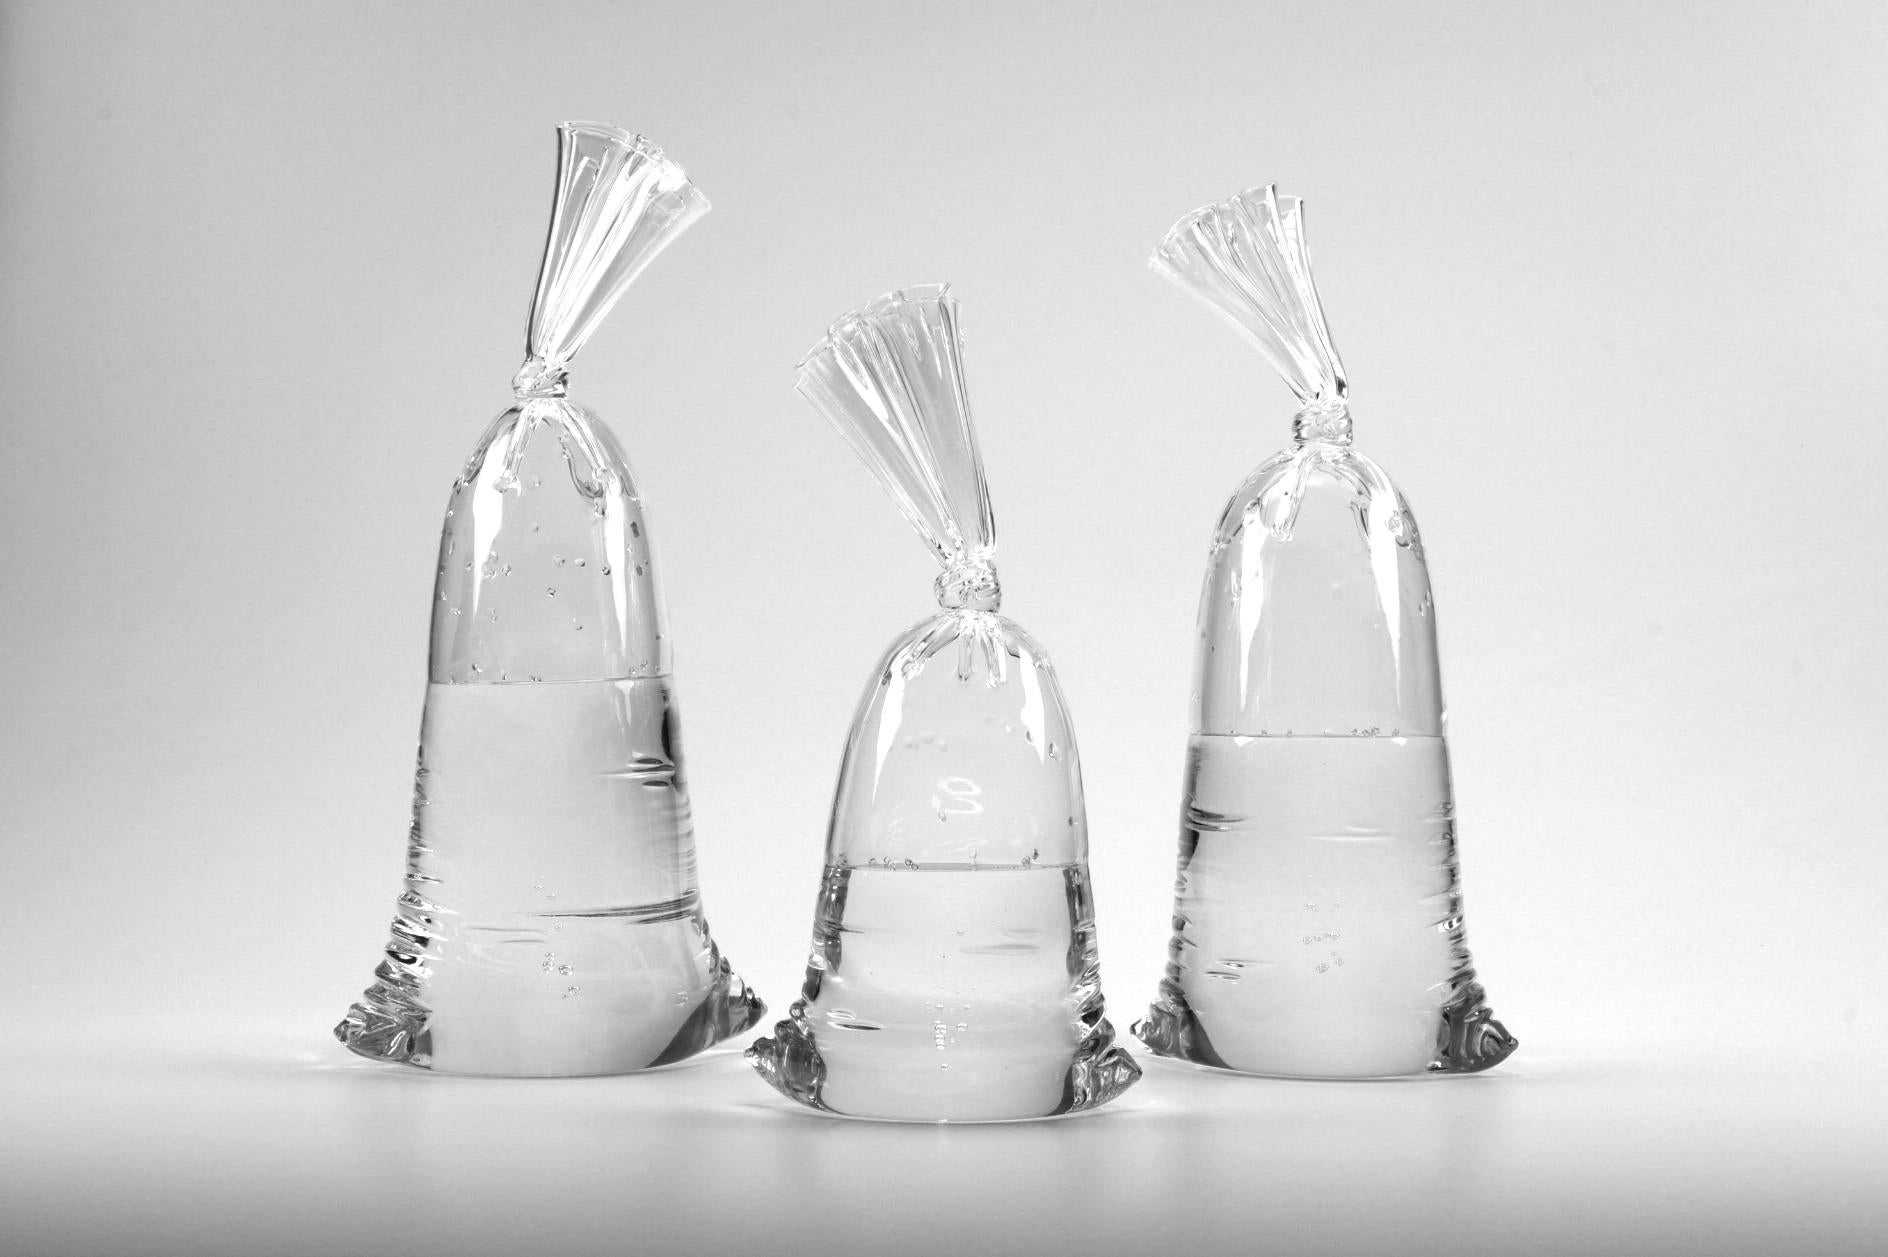 Hyperreal glass water bag trio sculpture installation (set of 3), Voll- und Hohlglas von Dylan Martinez.   

Abmessungen der Tasche (ca.): 
Links: 11,75 x 7 x 4,5